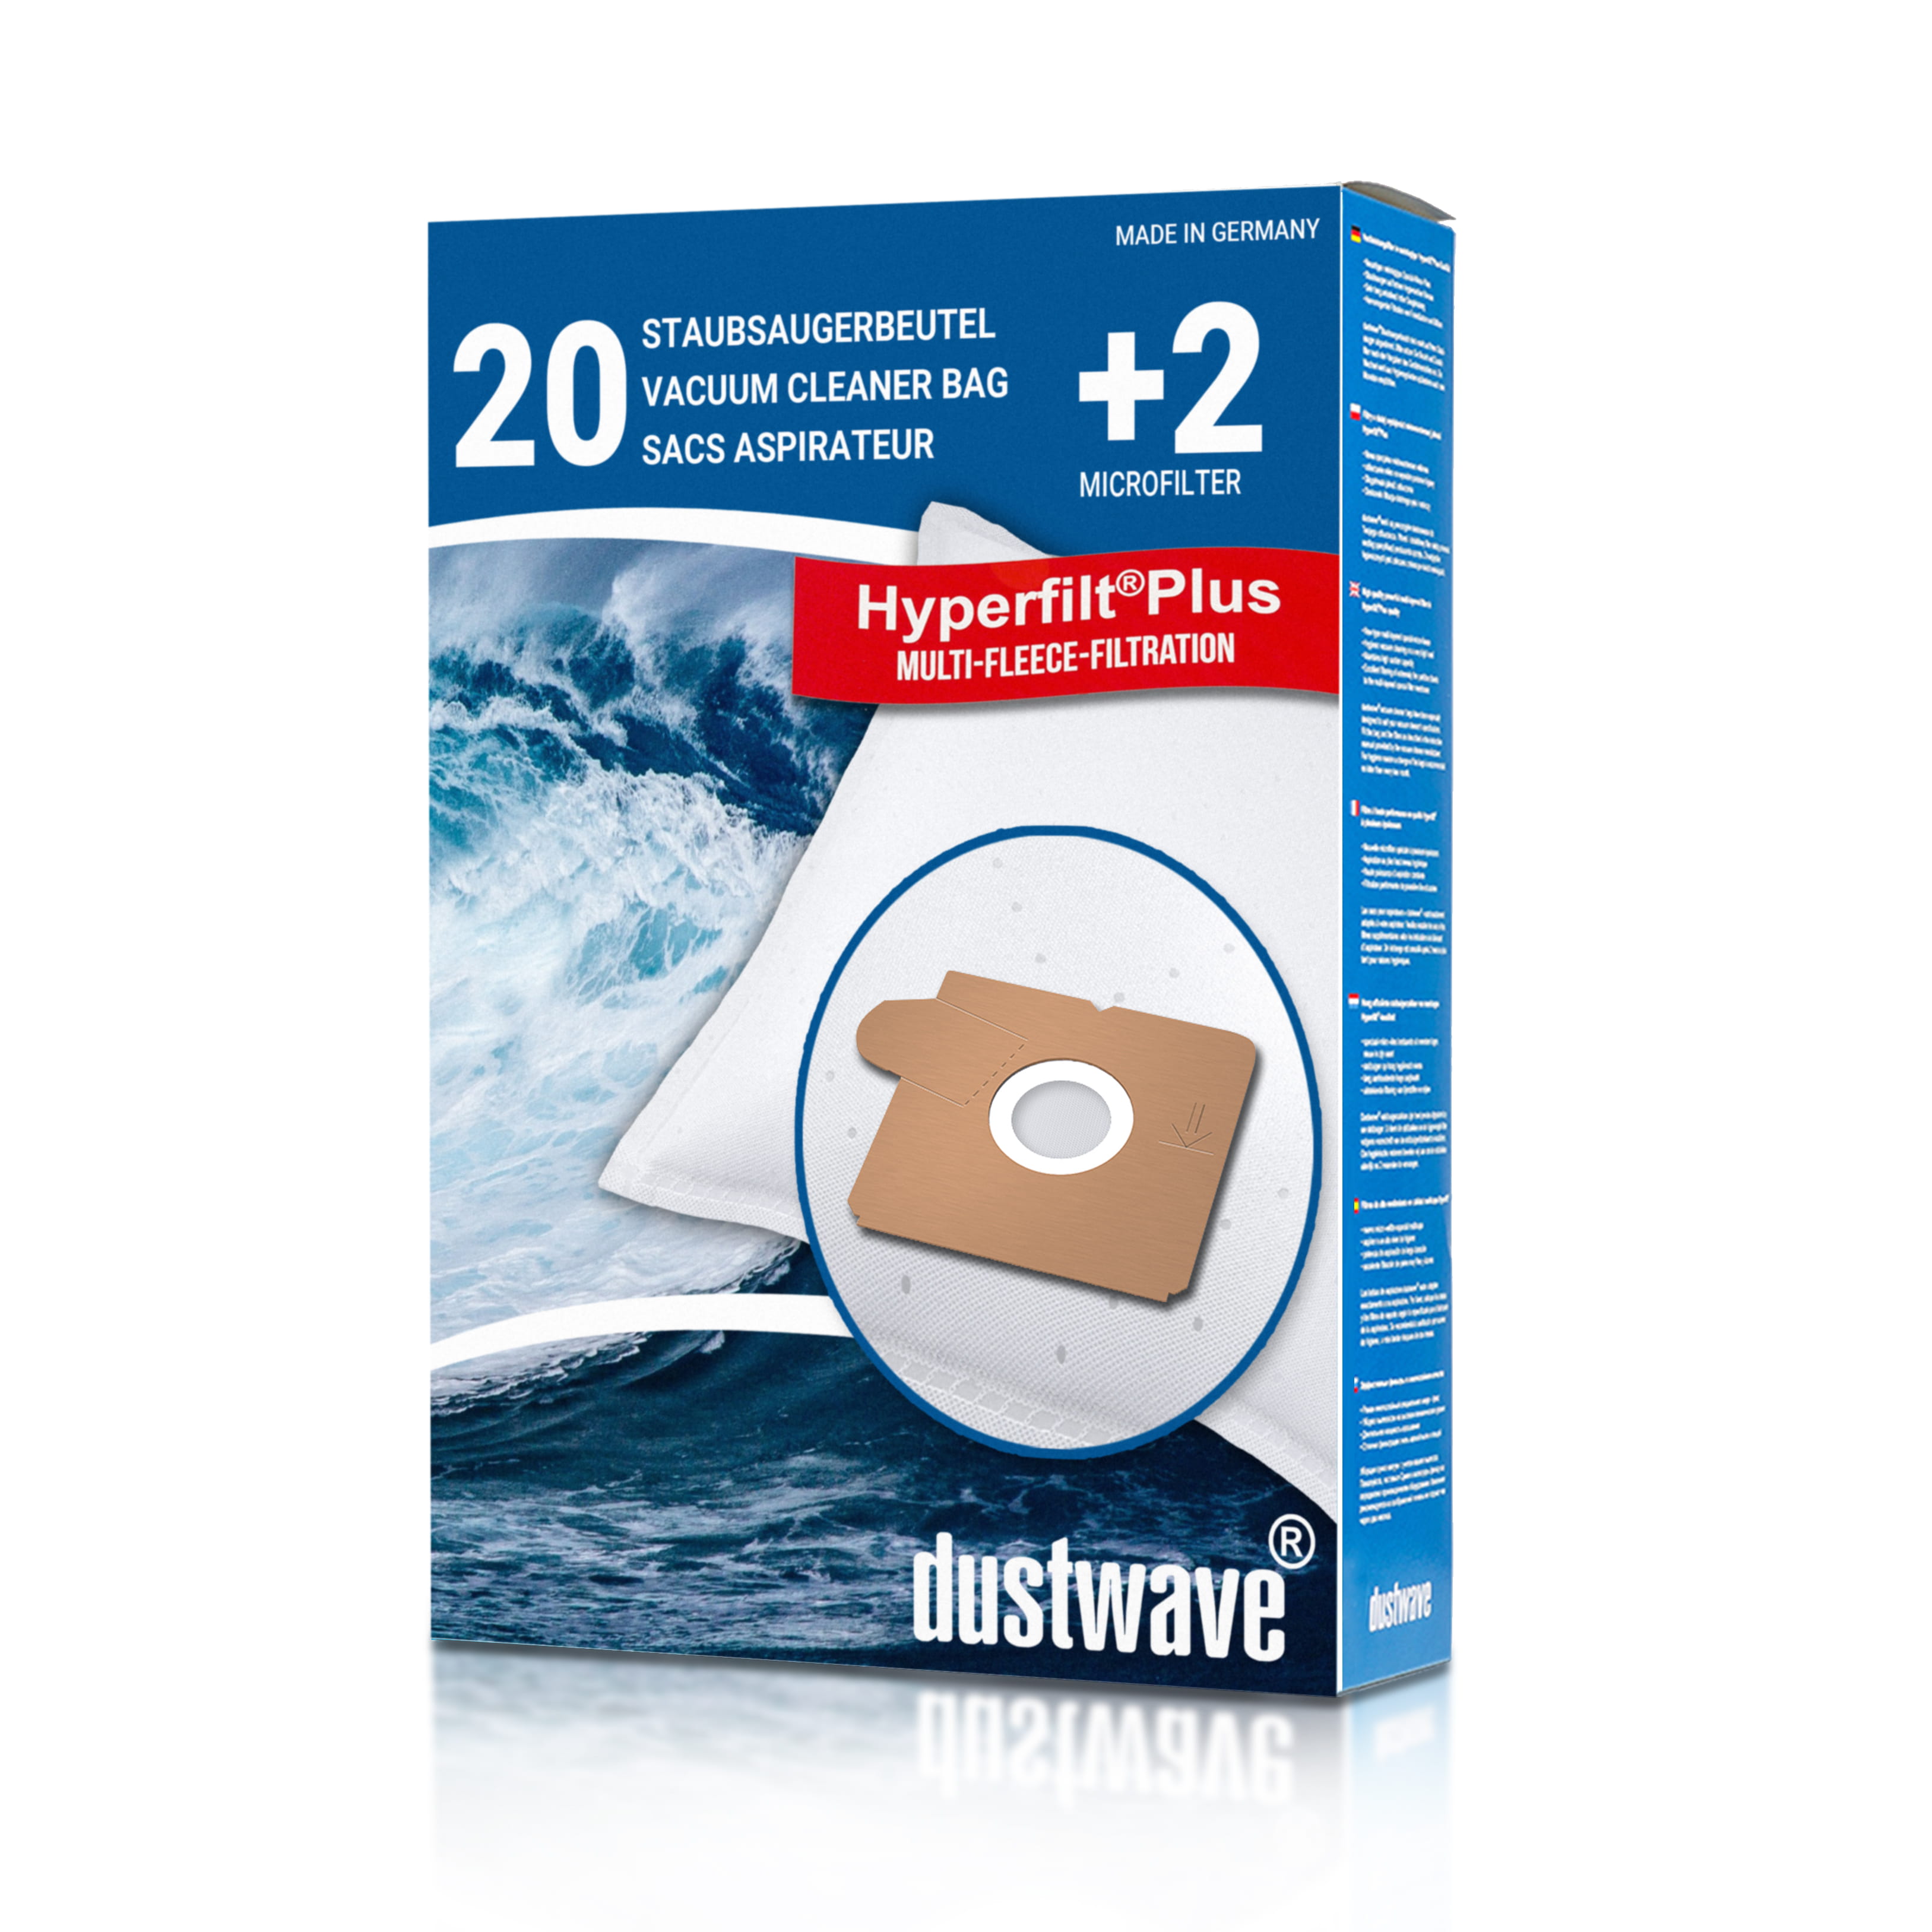 Dustwave® Premium 20 Staubsaugerbeutel für AEG Smart 160.0 - hocheffizient mit Hygieneverschluss - Made in Germany